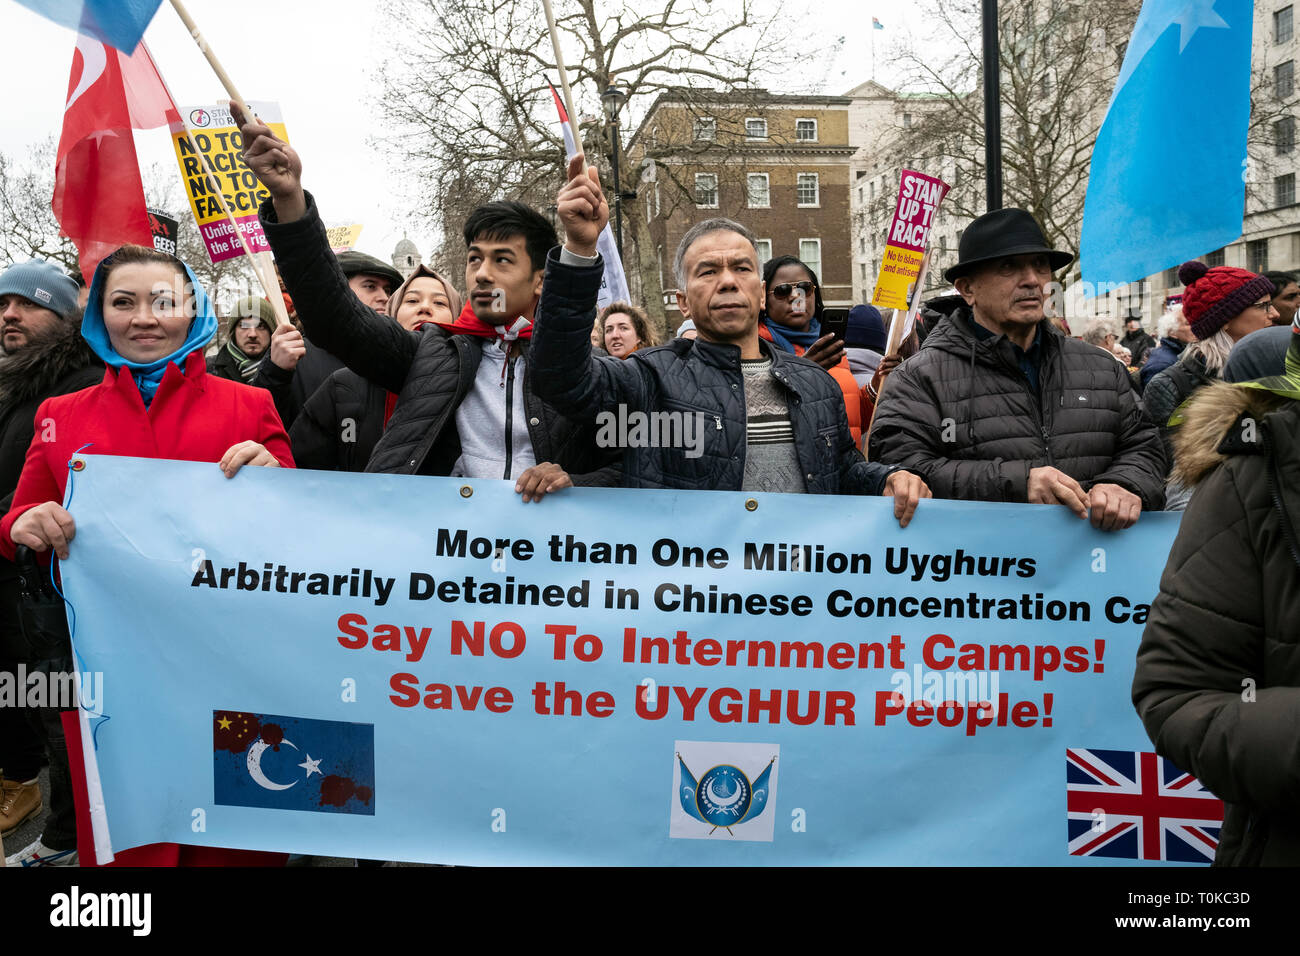 Uiguren eine ethnische Gruppe aus Ostturkestan und Leben in Kinn März und Protest in London gegen die Haftbedingungen in chinesischen Konzentrationslagern. Stockfoto